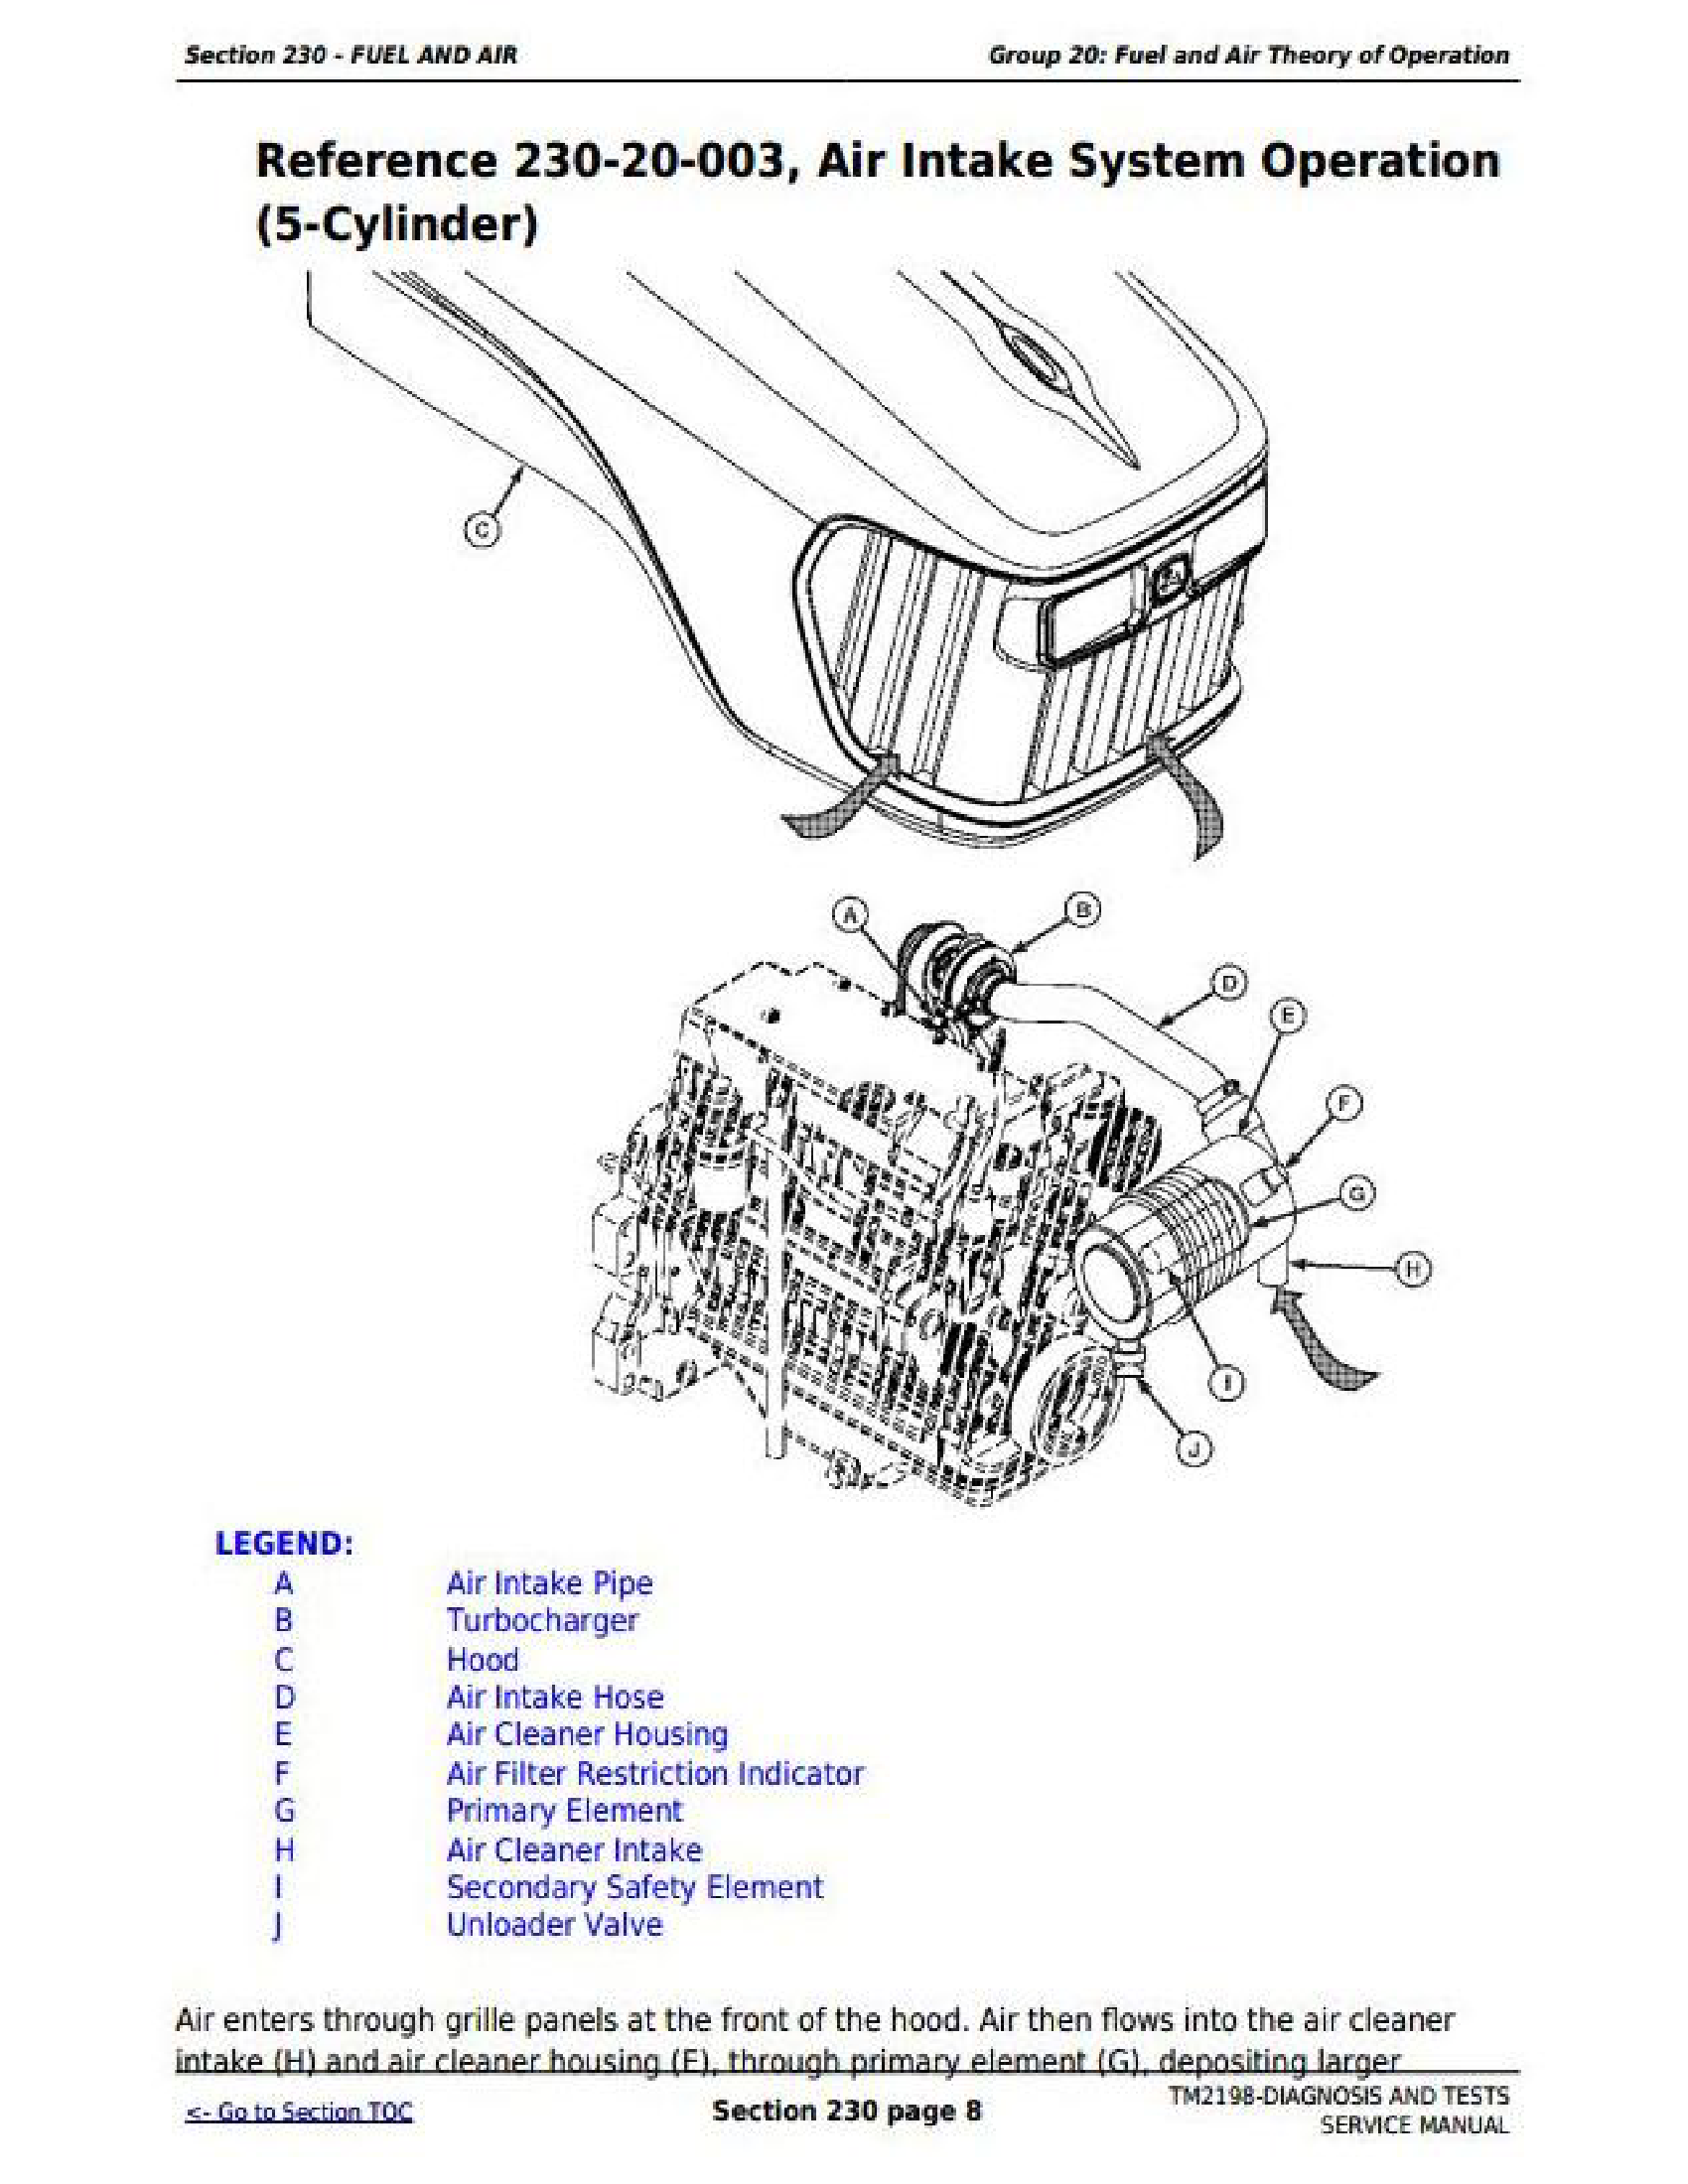 John Deere 1F9130GX manual pdf